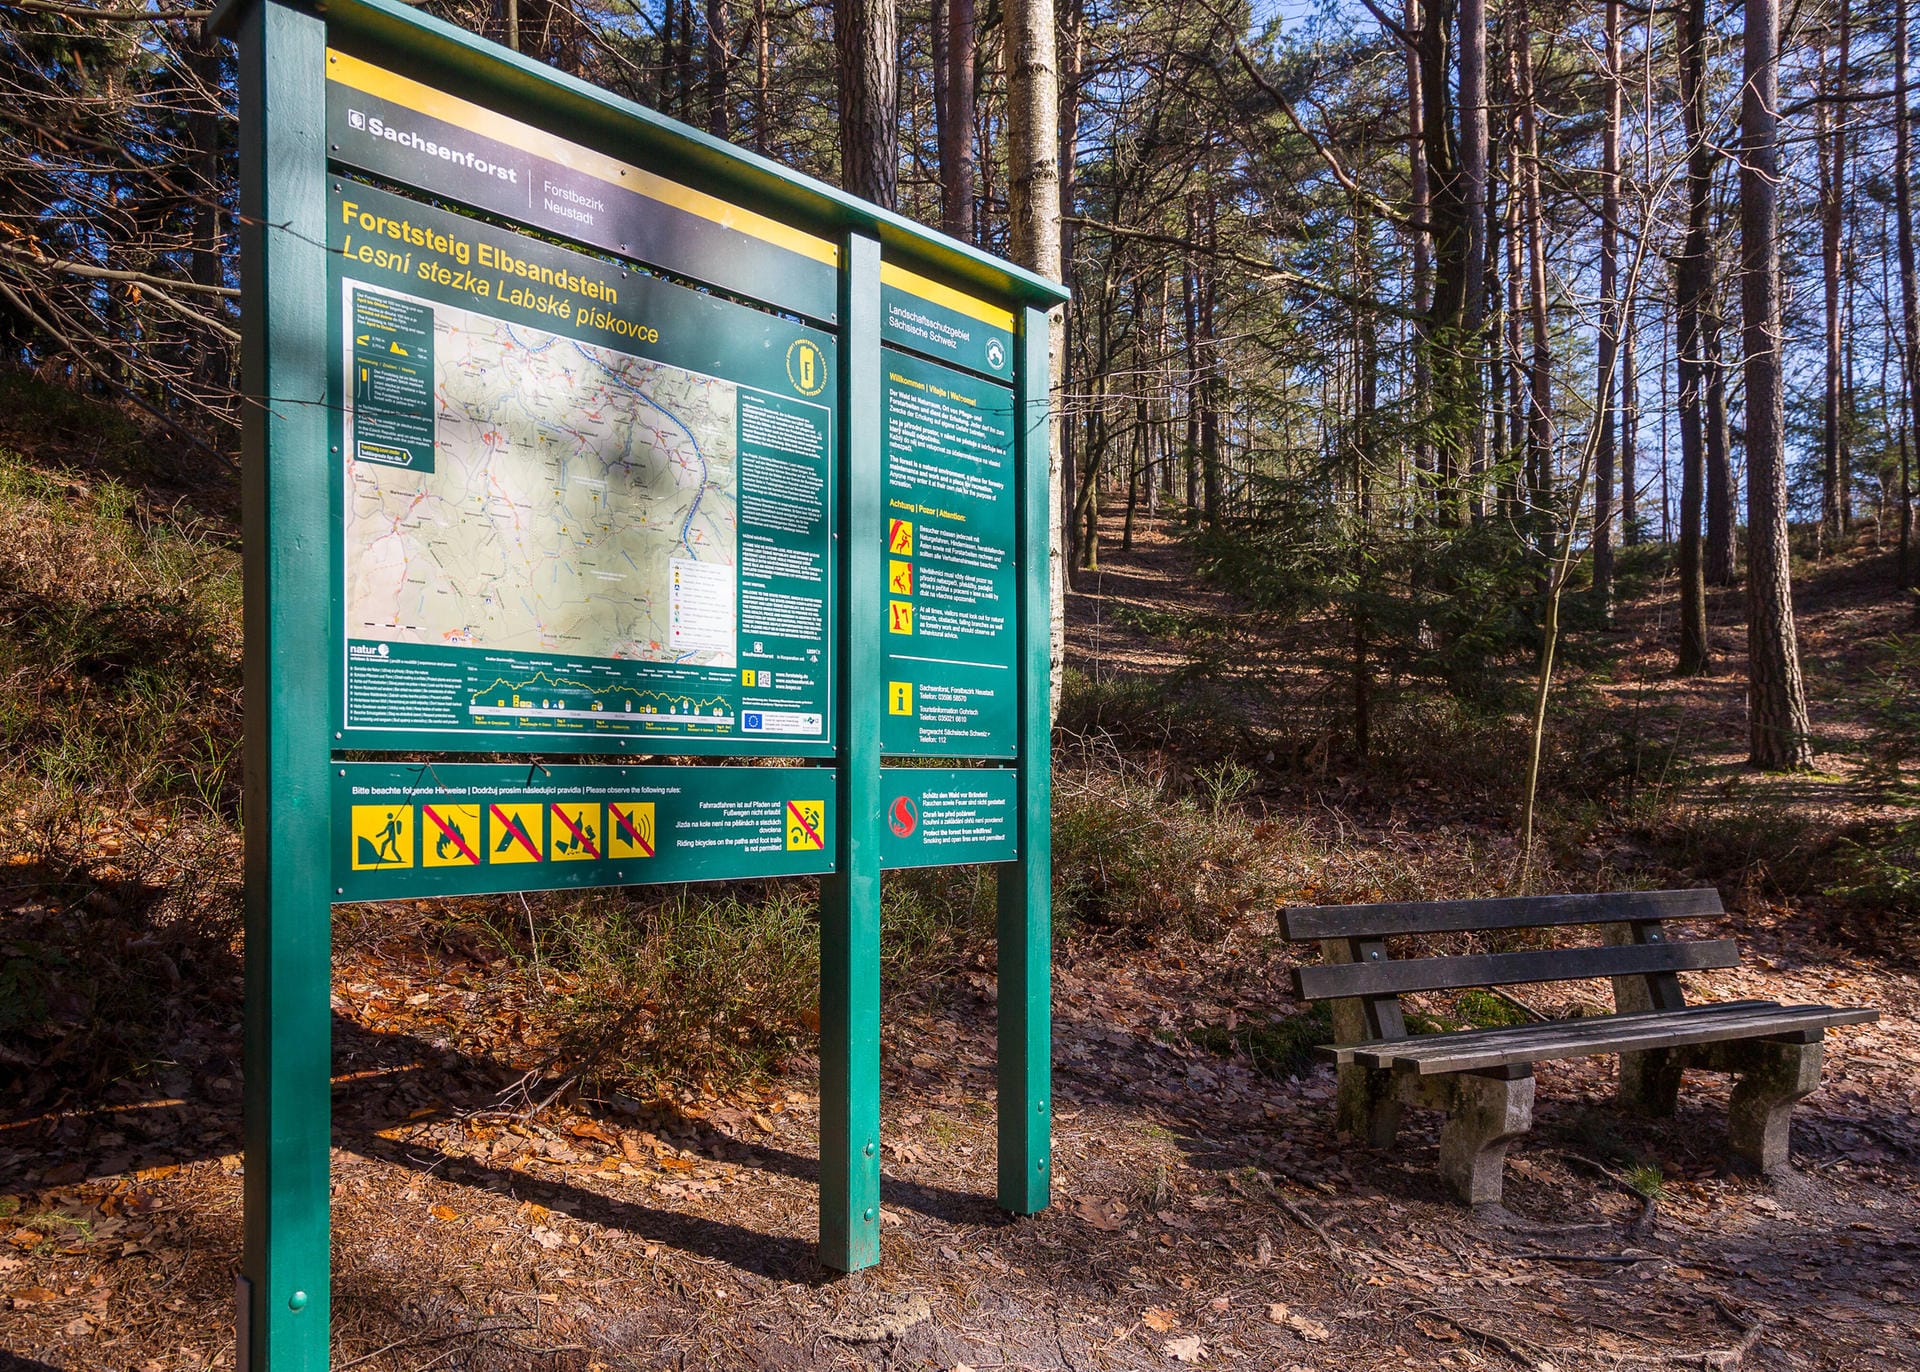 Forststeig: Die Wanderwege sind mit großen Wanderkarten zur Orientierung ausgestattet.